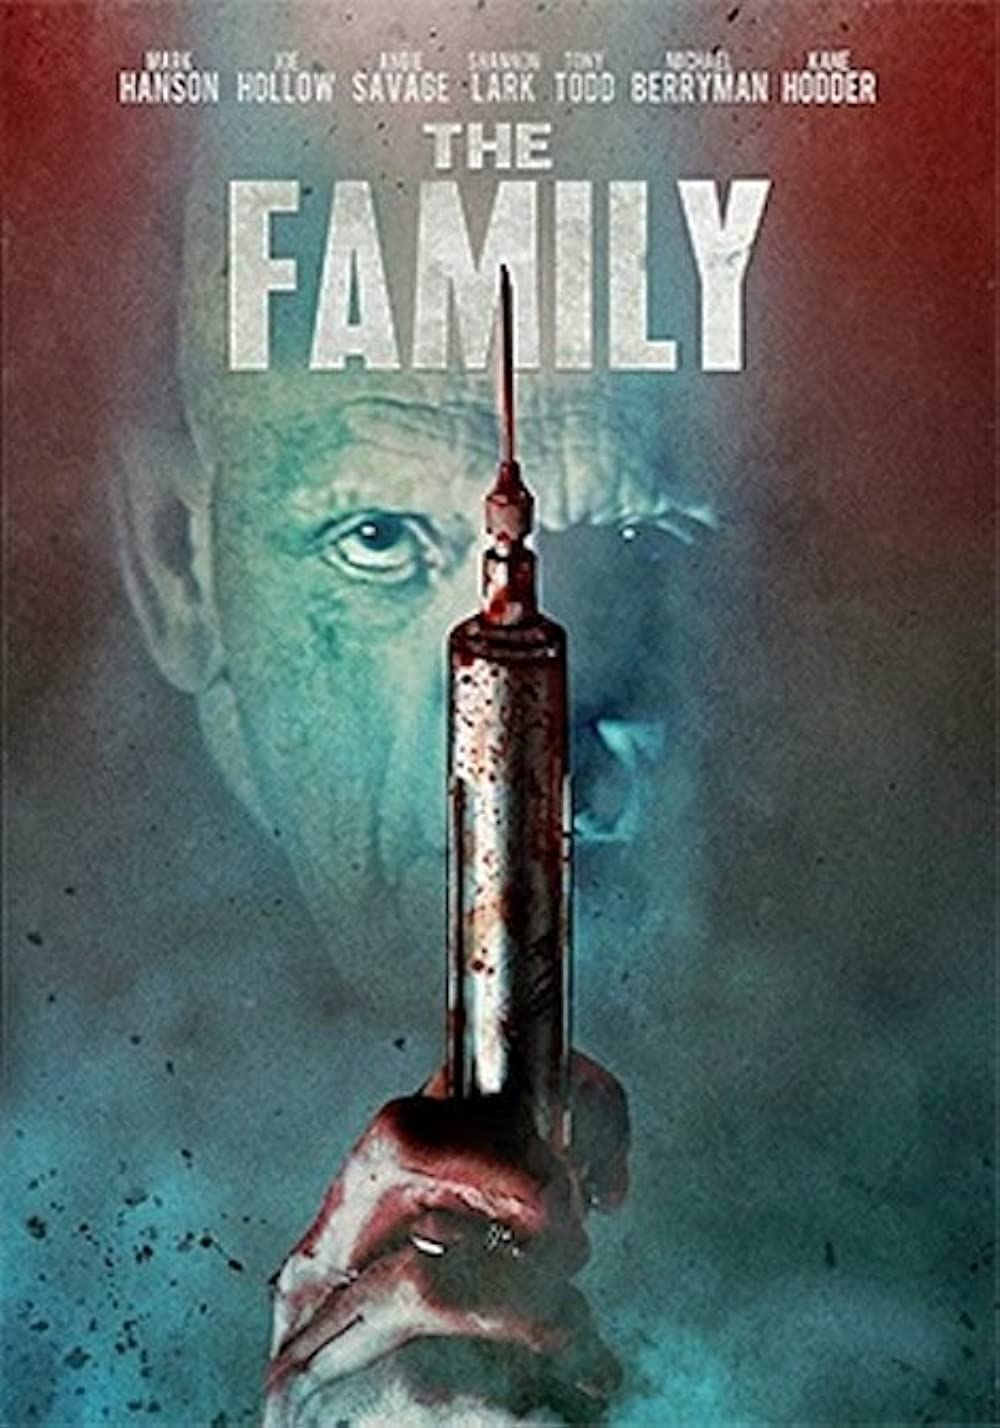 ดูหนังออนไลน์ฟรี The Family (2011) ตระกูลโฉด โหดไม่ยั้ง หนังเต็มเรื่อง หนังมาสเตอร์ ดูหนังHD ดูหนังออนไลน์ ดูหนังใหม่